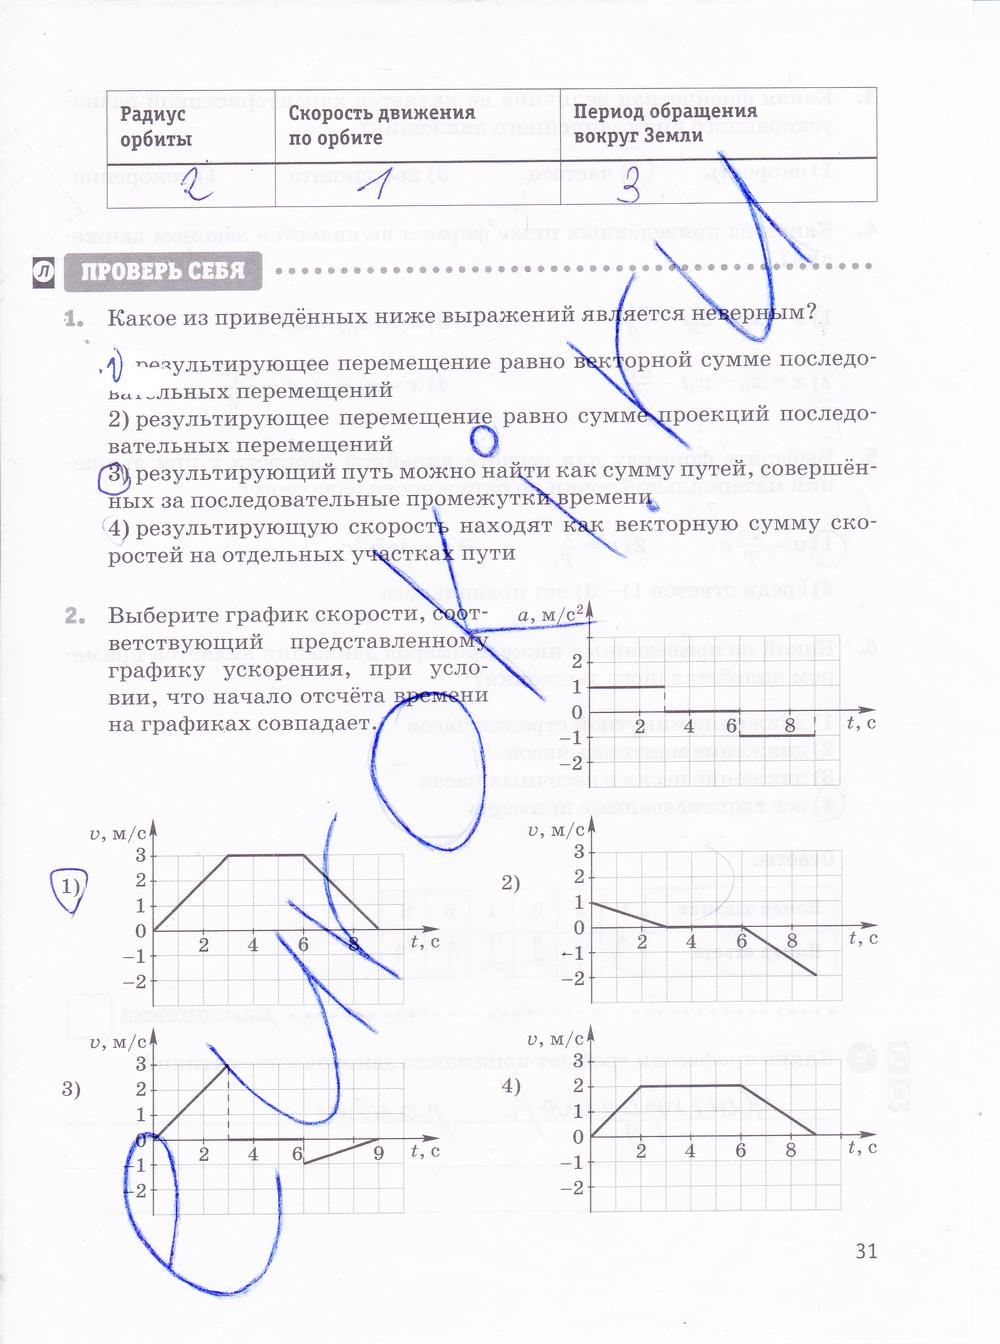 гдз 10 класс рабочая тетрадь страница 31 физика Касьянов, Дмитриева